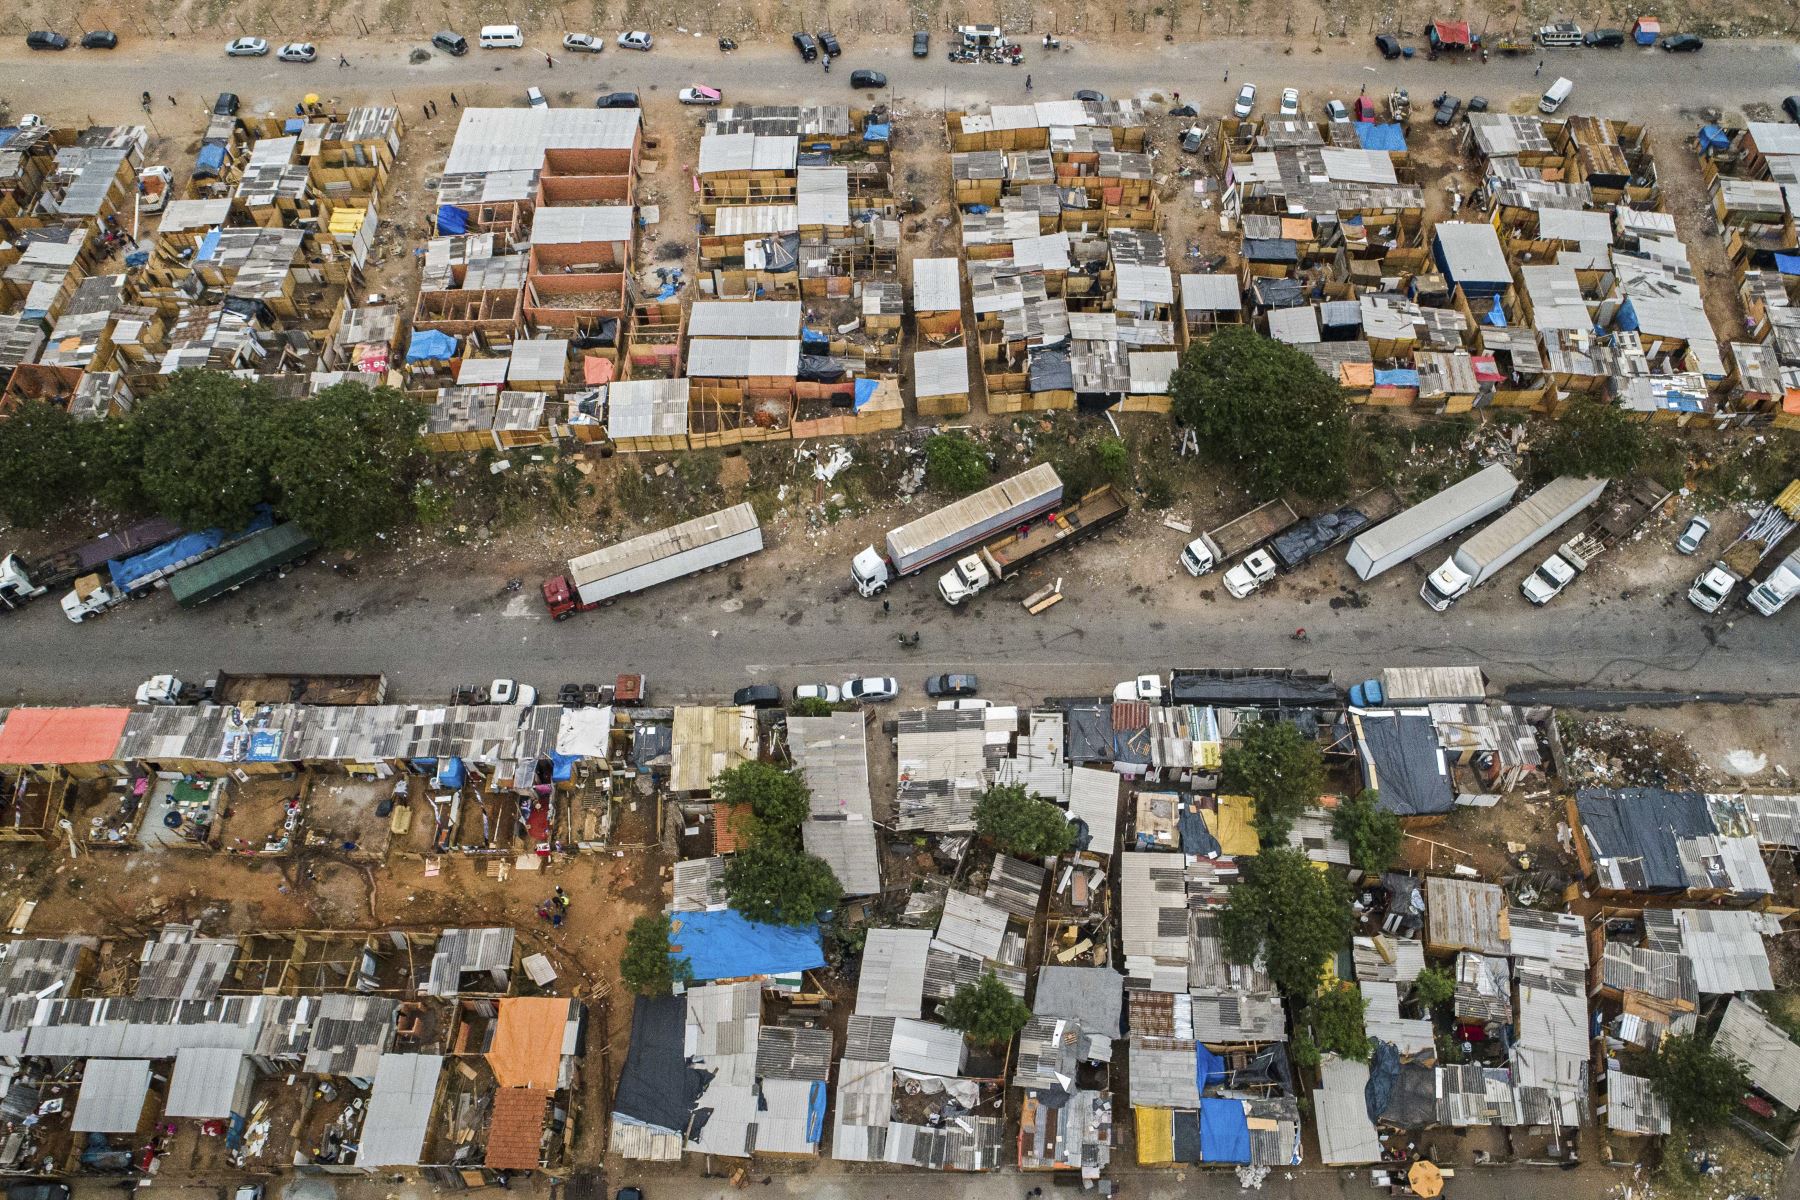 Hoy ya cerca de 700 familias construyeron sus viviendas allí, la mayoría de madera, con techos de láminas de plástico y sin baños. Foto: AFP